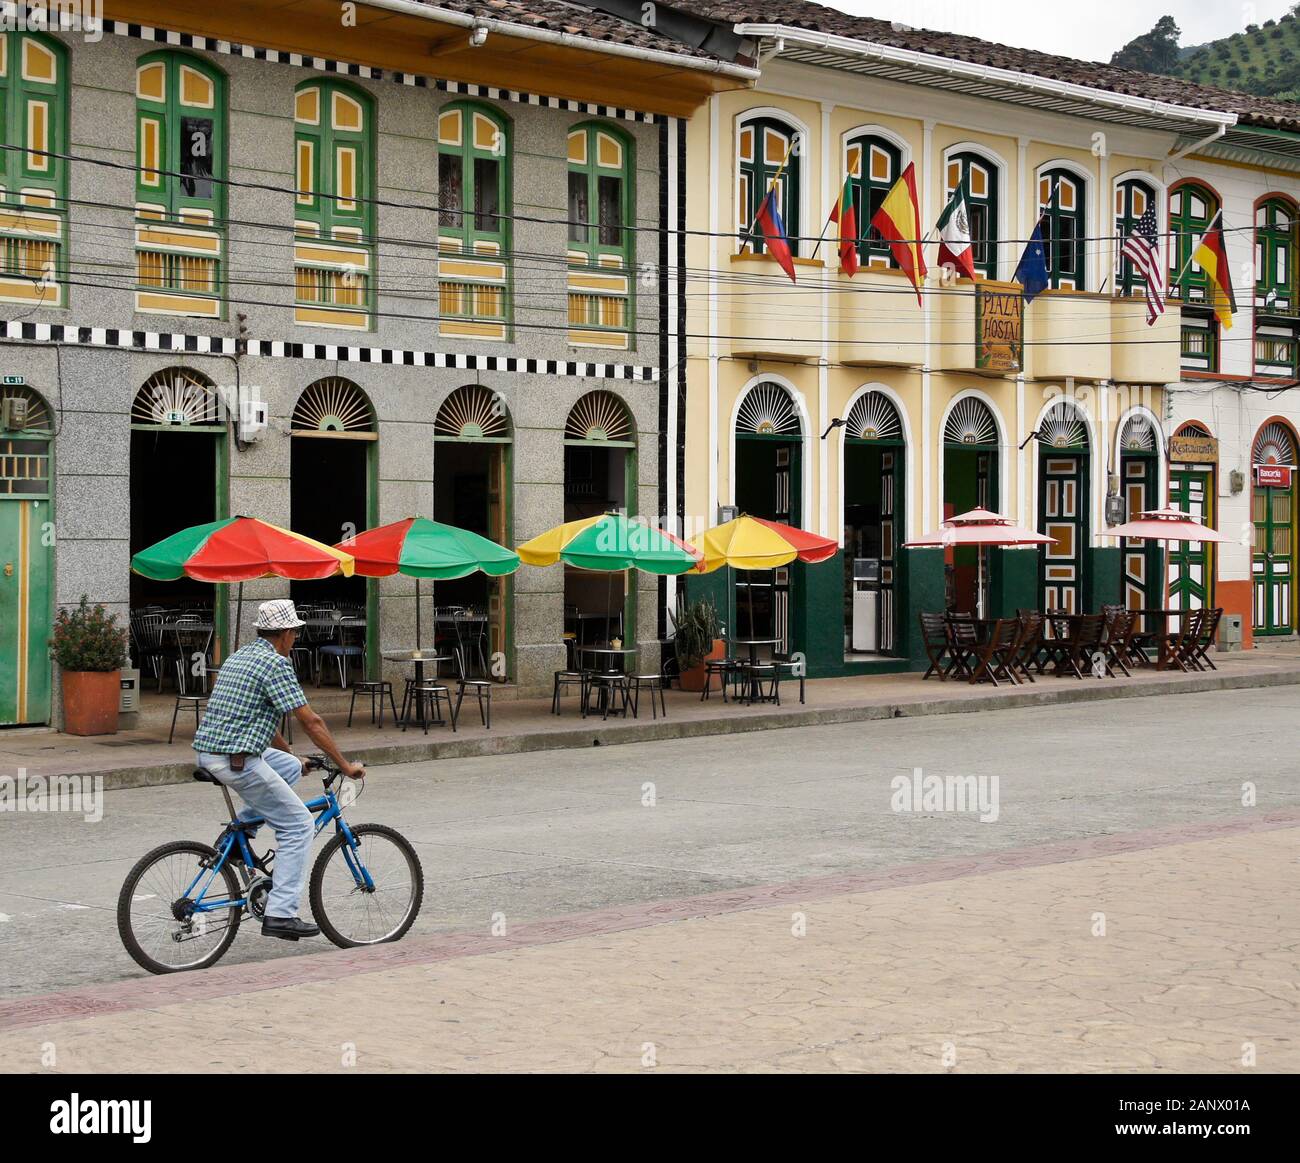 Mann auf dem Fahrrad reiten Vergangenheit farbenfrohe Gebäude mit Blick auf Main Plaza der Stadt (Plaza Principal), Pijao, Quindio Abteilung, Kolumbien Stockfoto